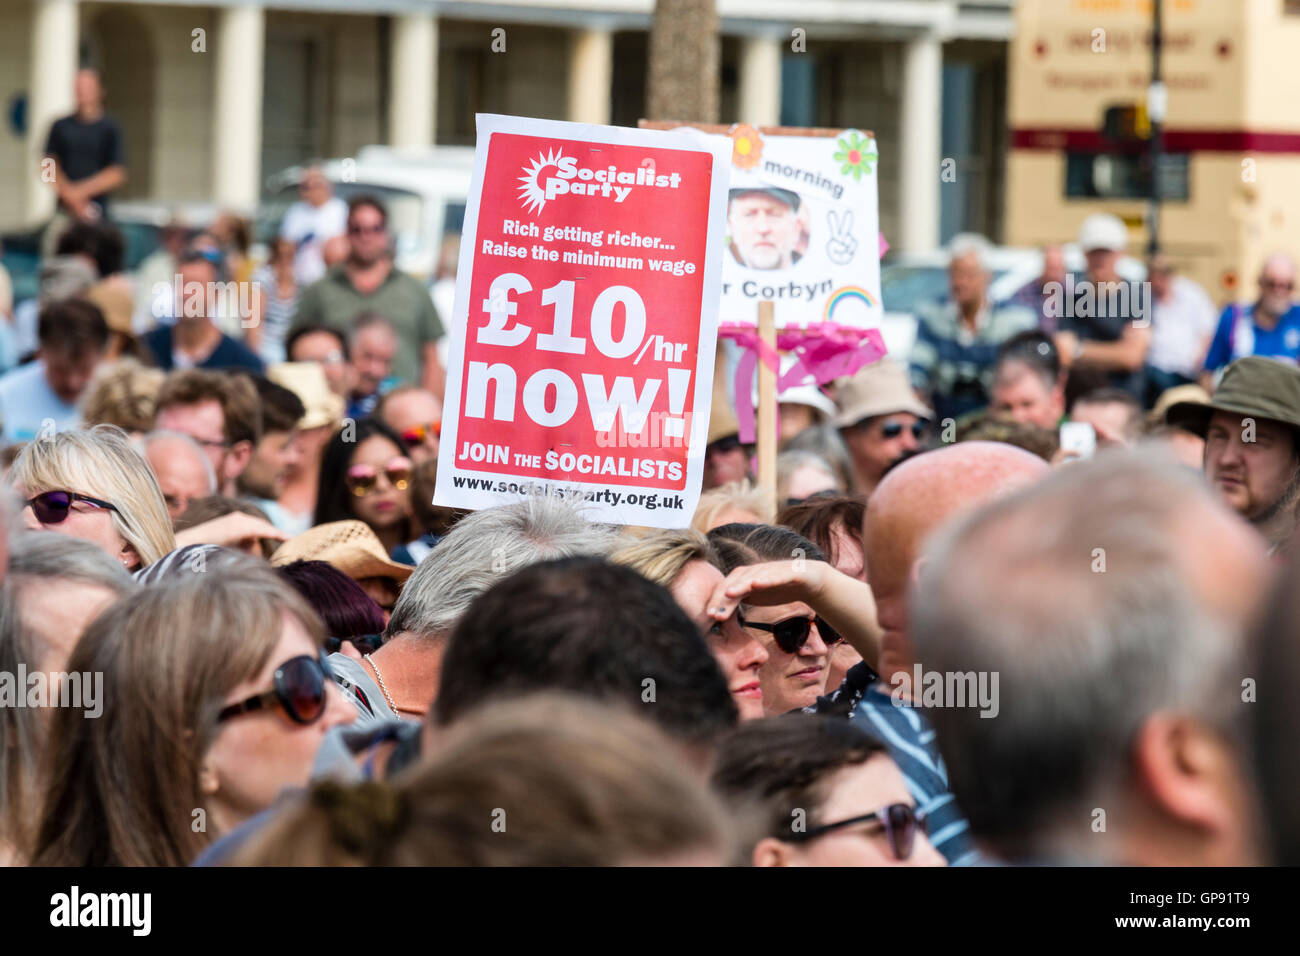 England, Ramsgate. Arbeits- und Dynamik Rallye für Jeremy Corbyn. Sozialistische Partei rote Plakat hielt über Unterstützer für "£10 Mindestlohn jetzt!" Stockfoto